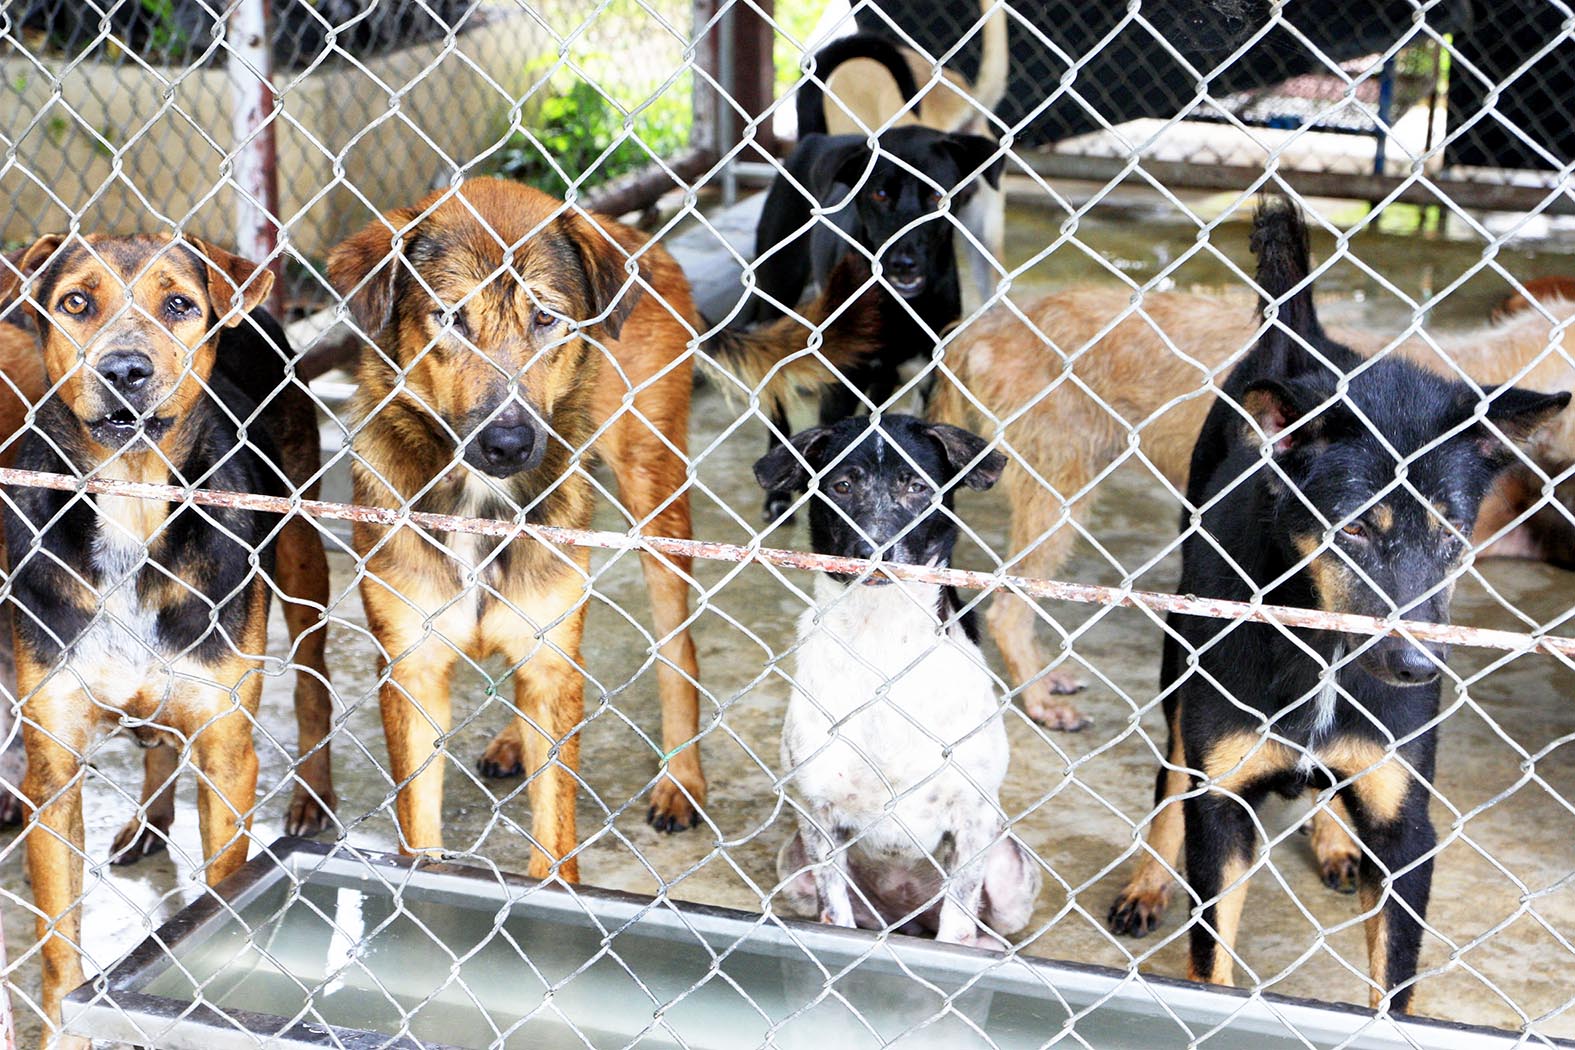 ประจวบคีรีขันธ์-นำร่อง 3 อำเภอ พื้นที่ปลอดโรคพิษสุนัขบ้ามุ่งสู่แหล่งท่องเที่ยวปลอดภัย